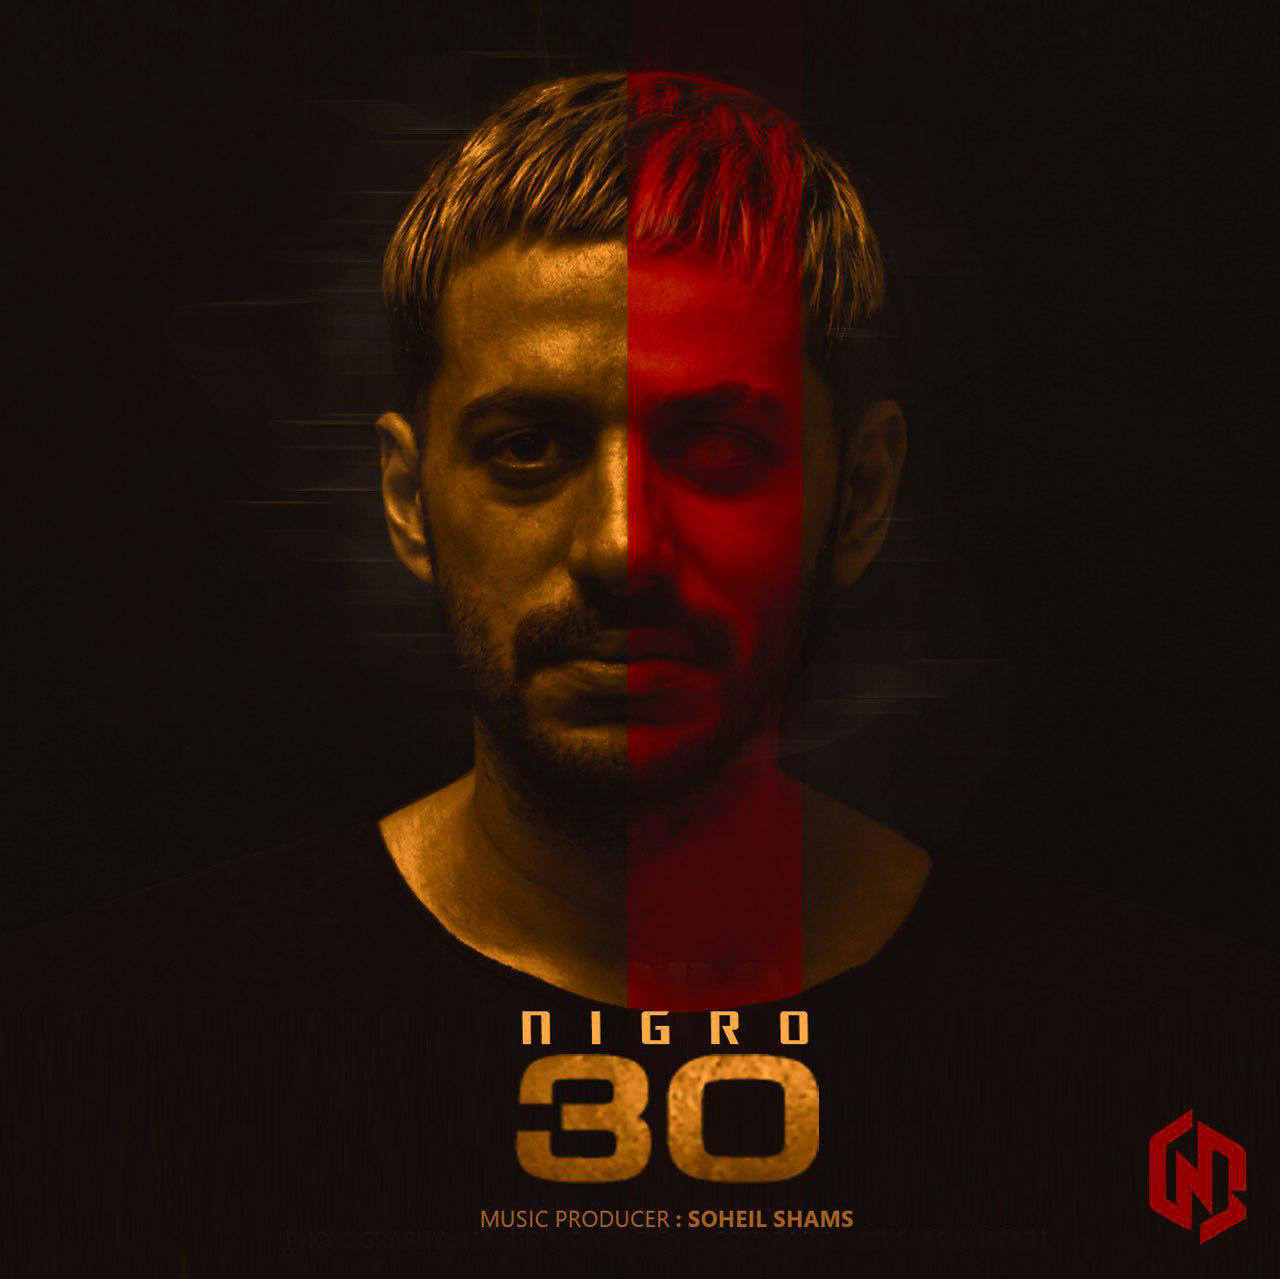 Nigro – 30